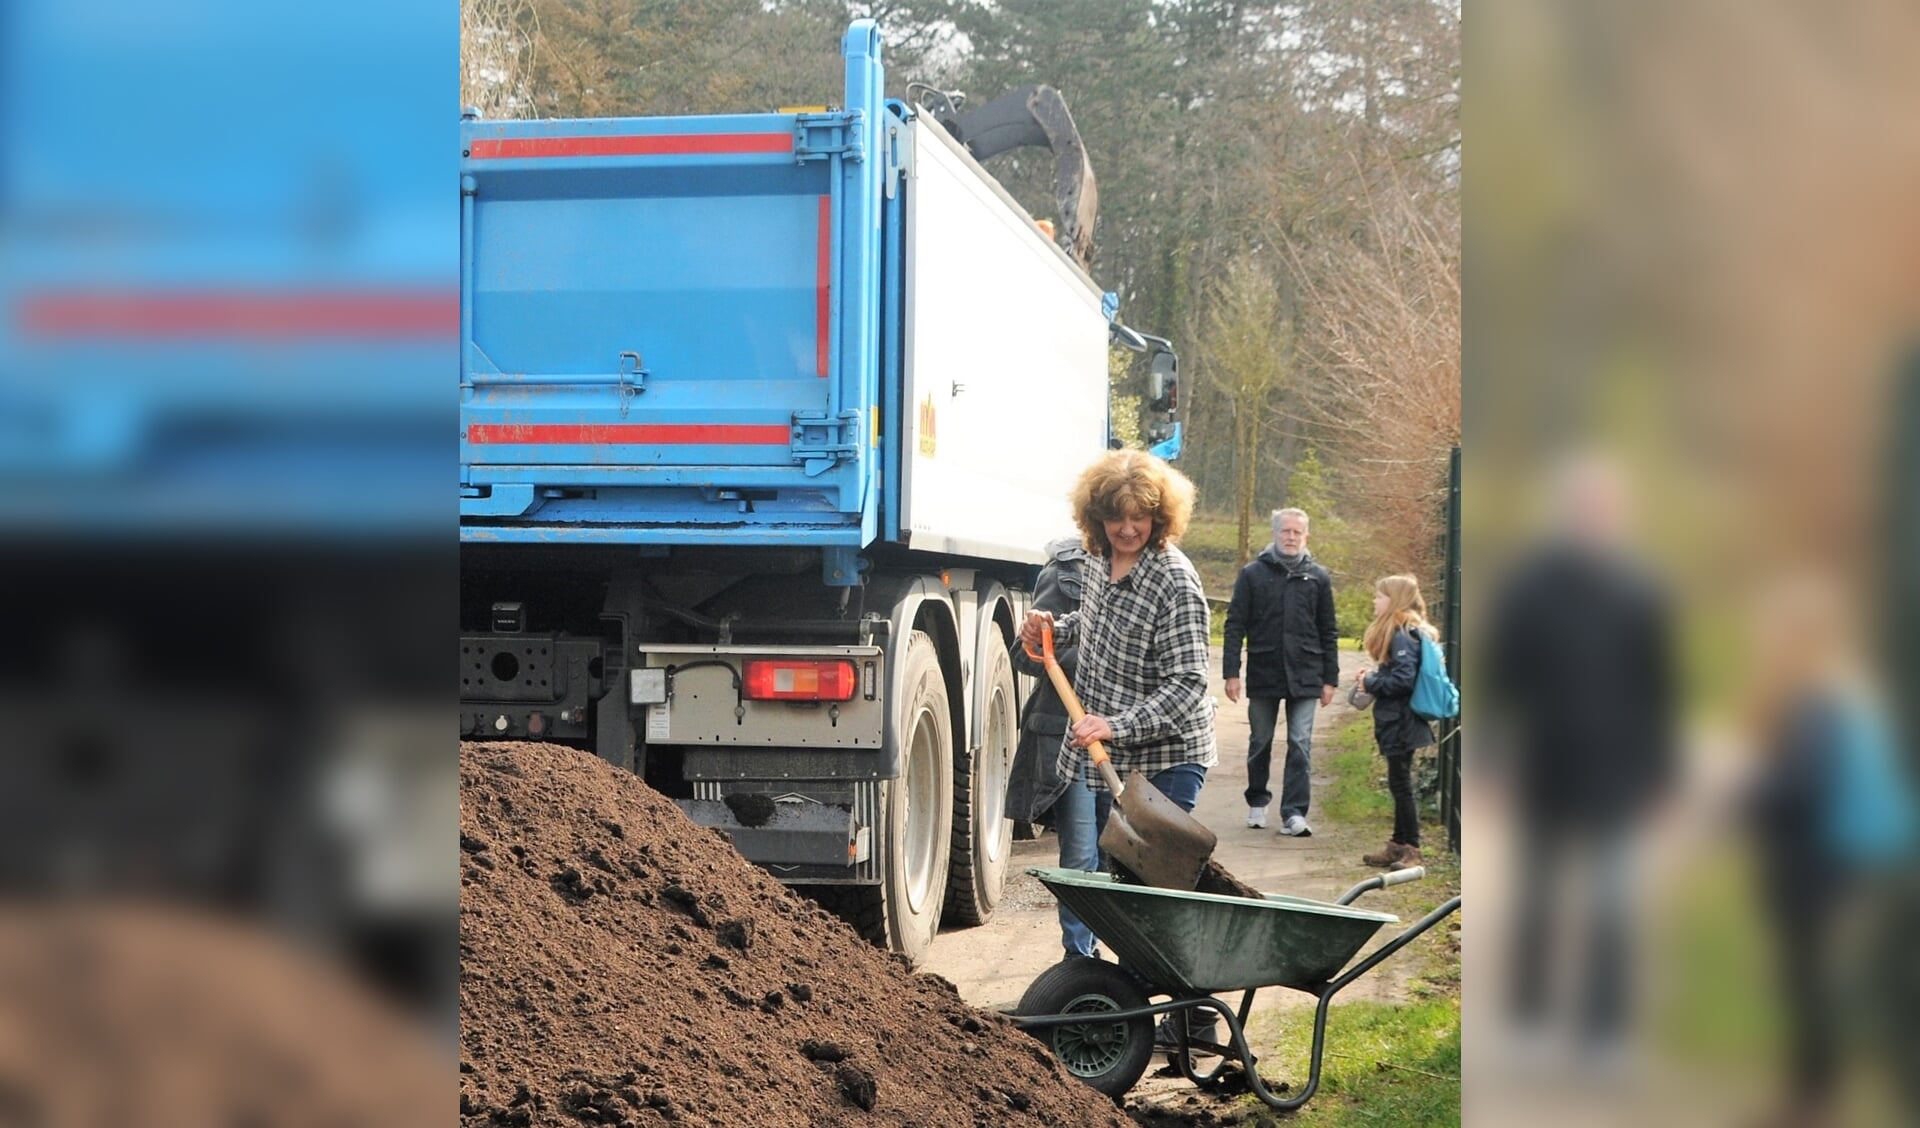 Buurtmoestuinen, volkstuincomplexen, pluk- en schooltuinen konden dit voorjaar bij Meerlanden een aanvraag den voor gratis compost.